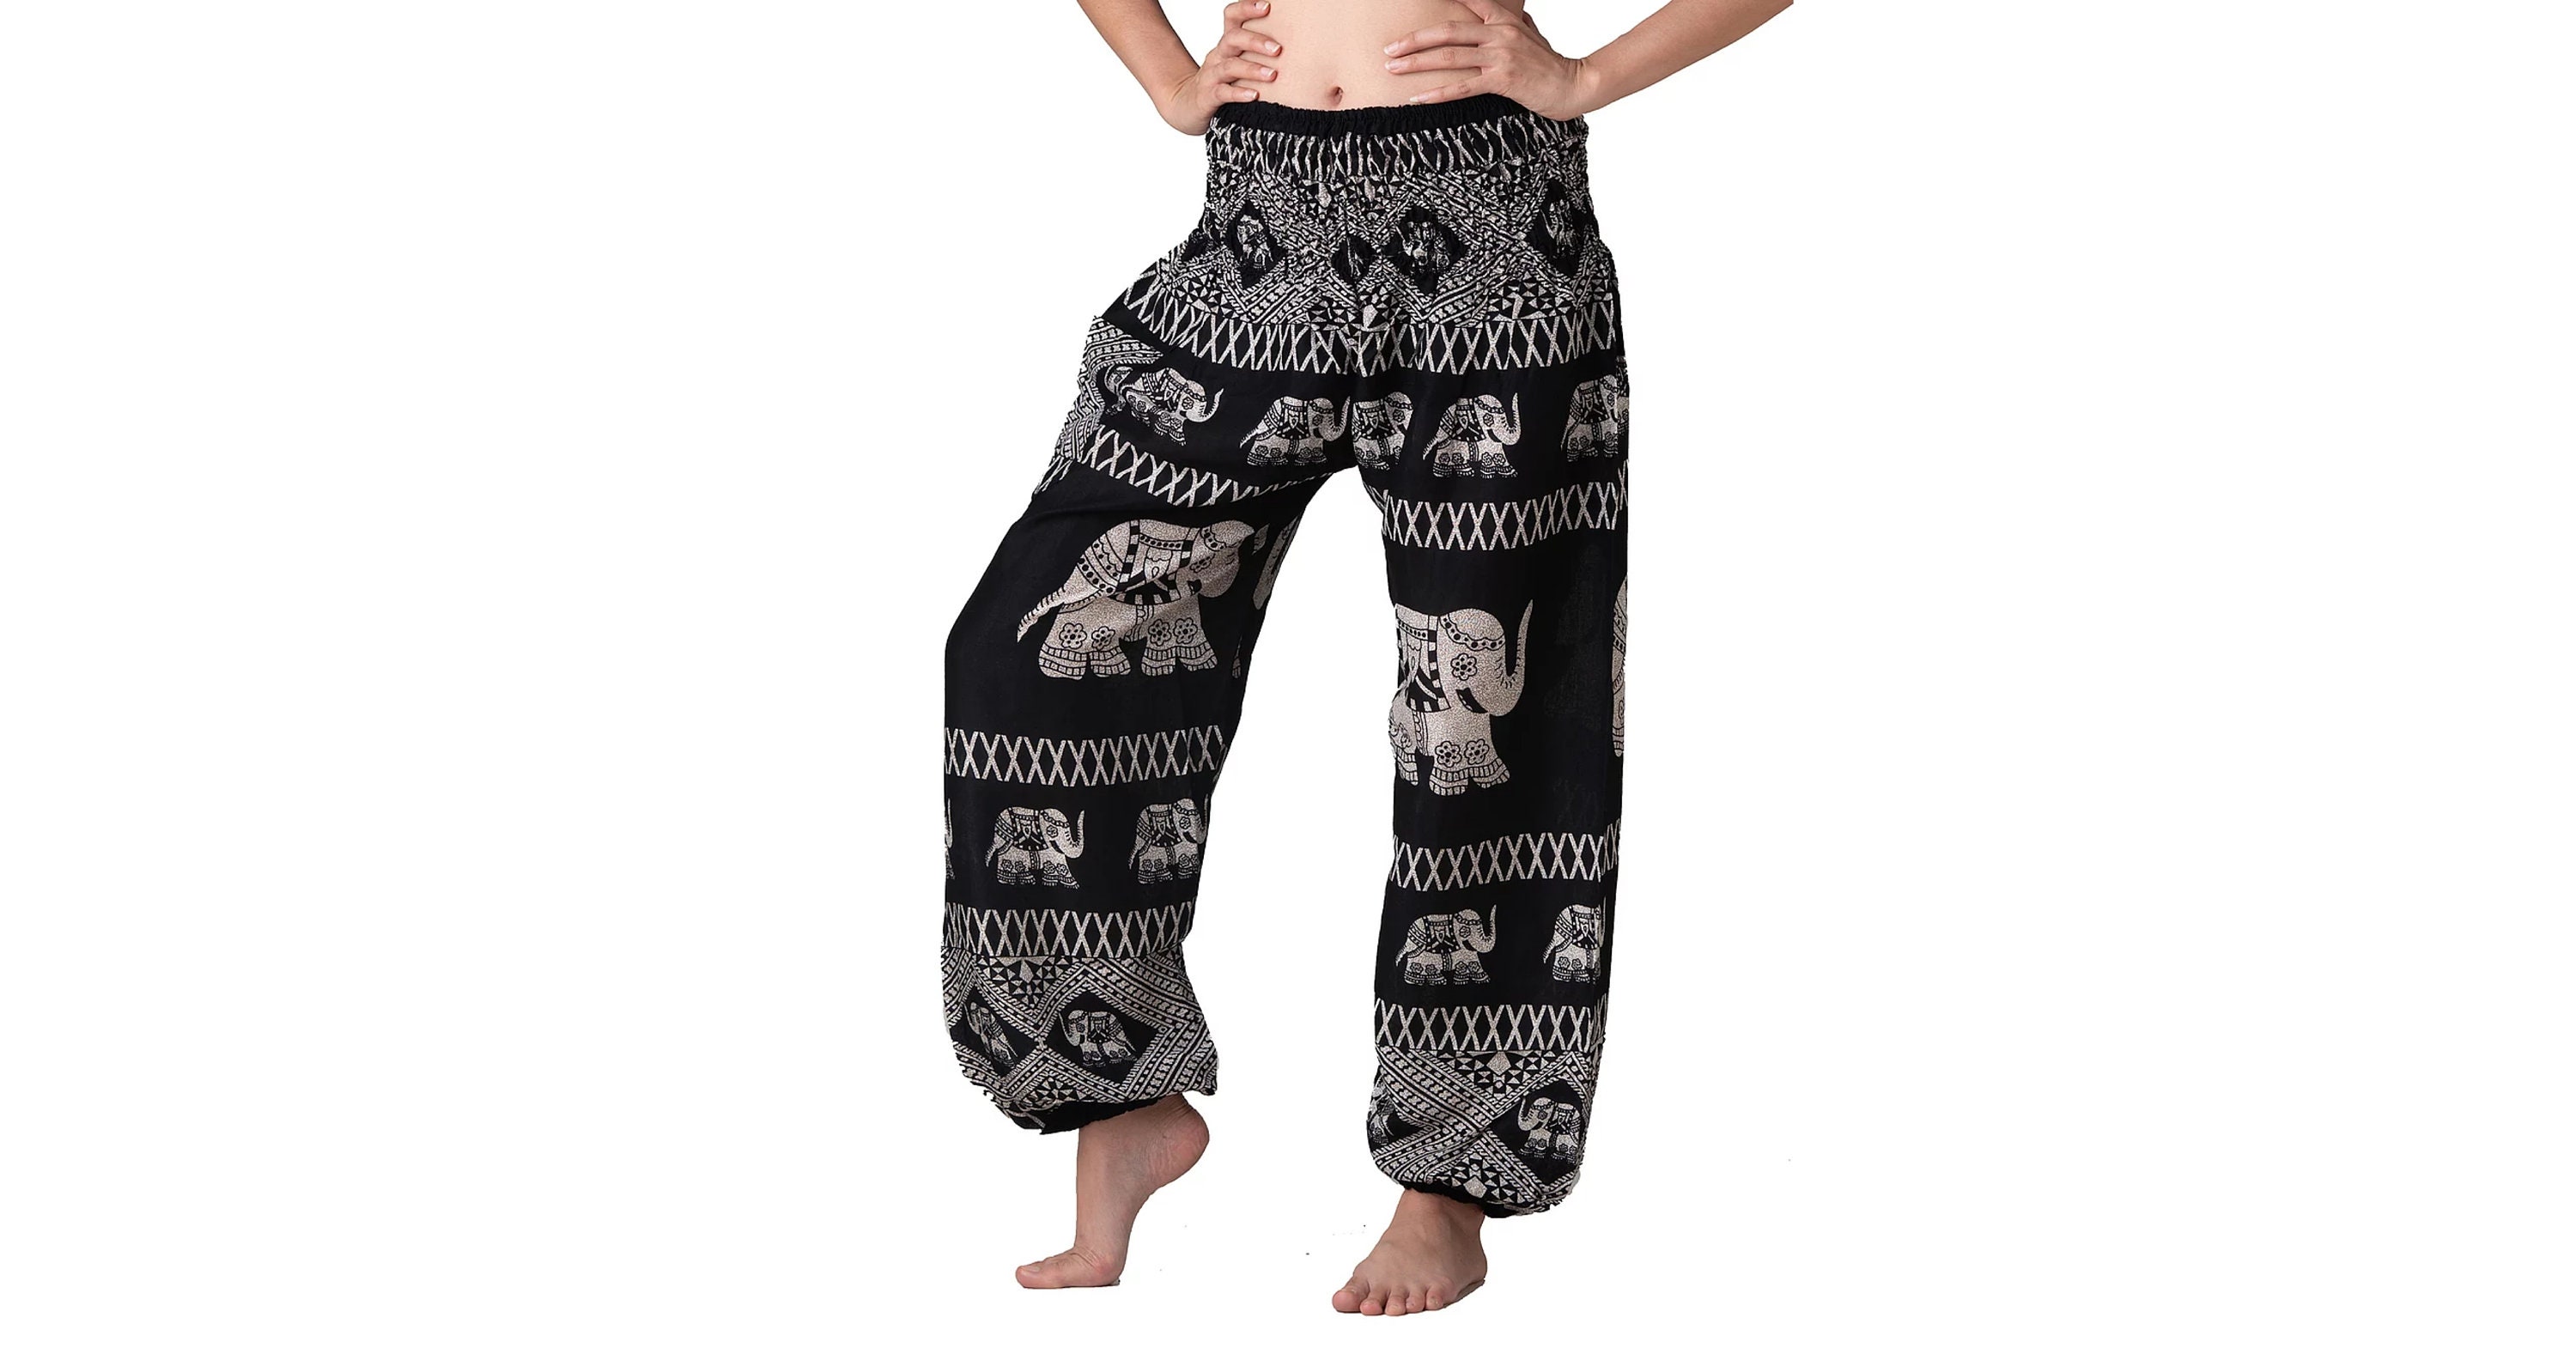 Elephant Boho hippie chic yoga & meditation harem pants – Bohofeather